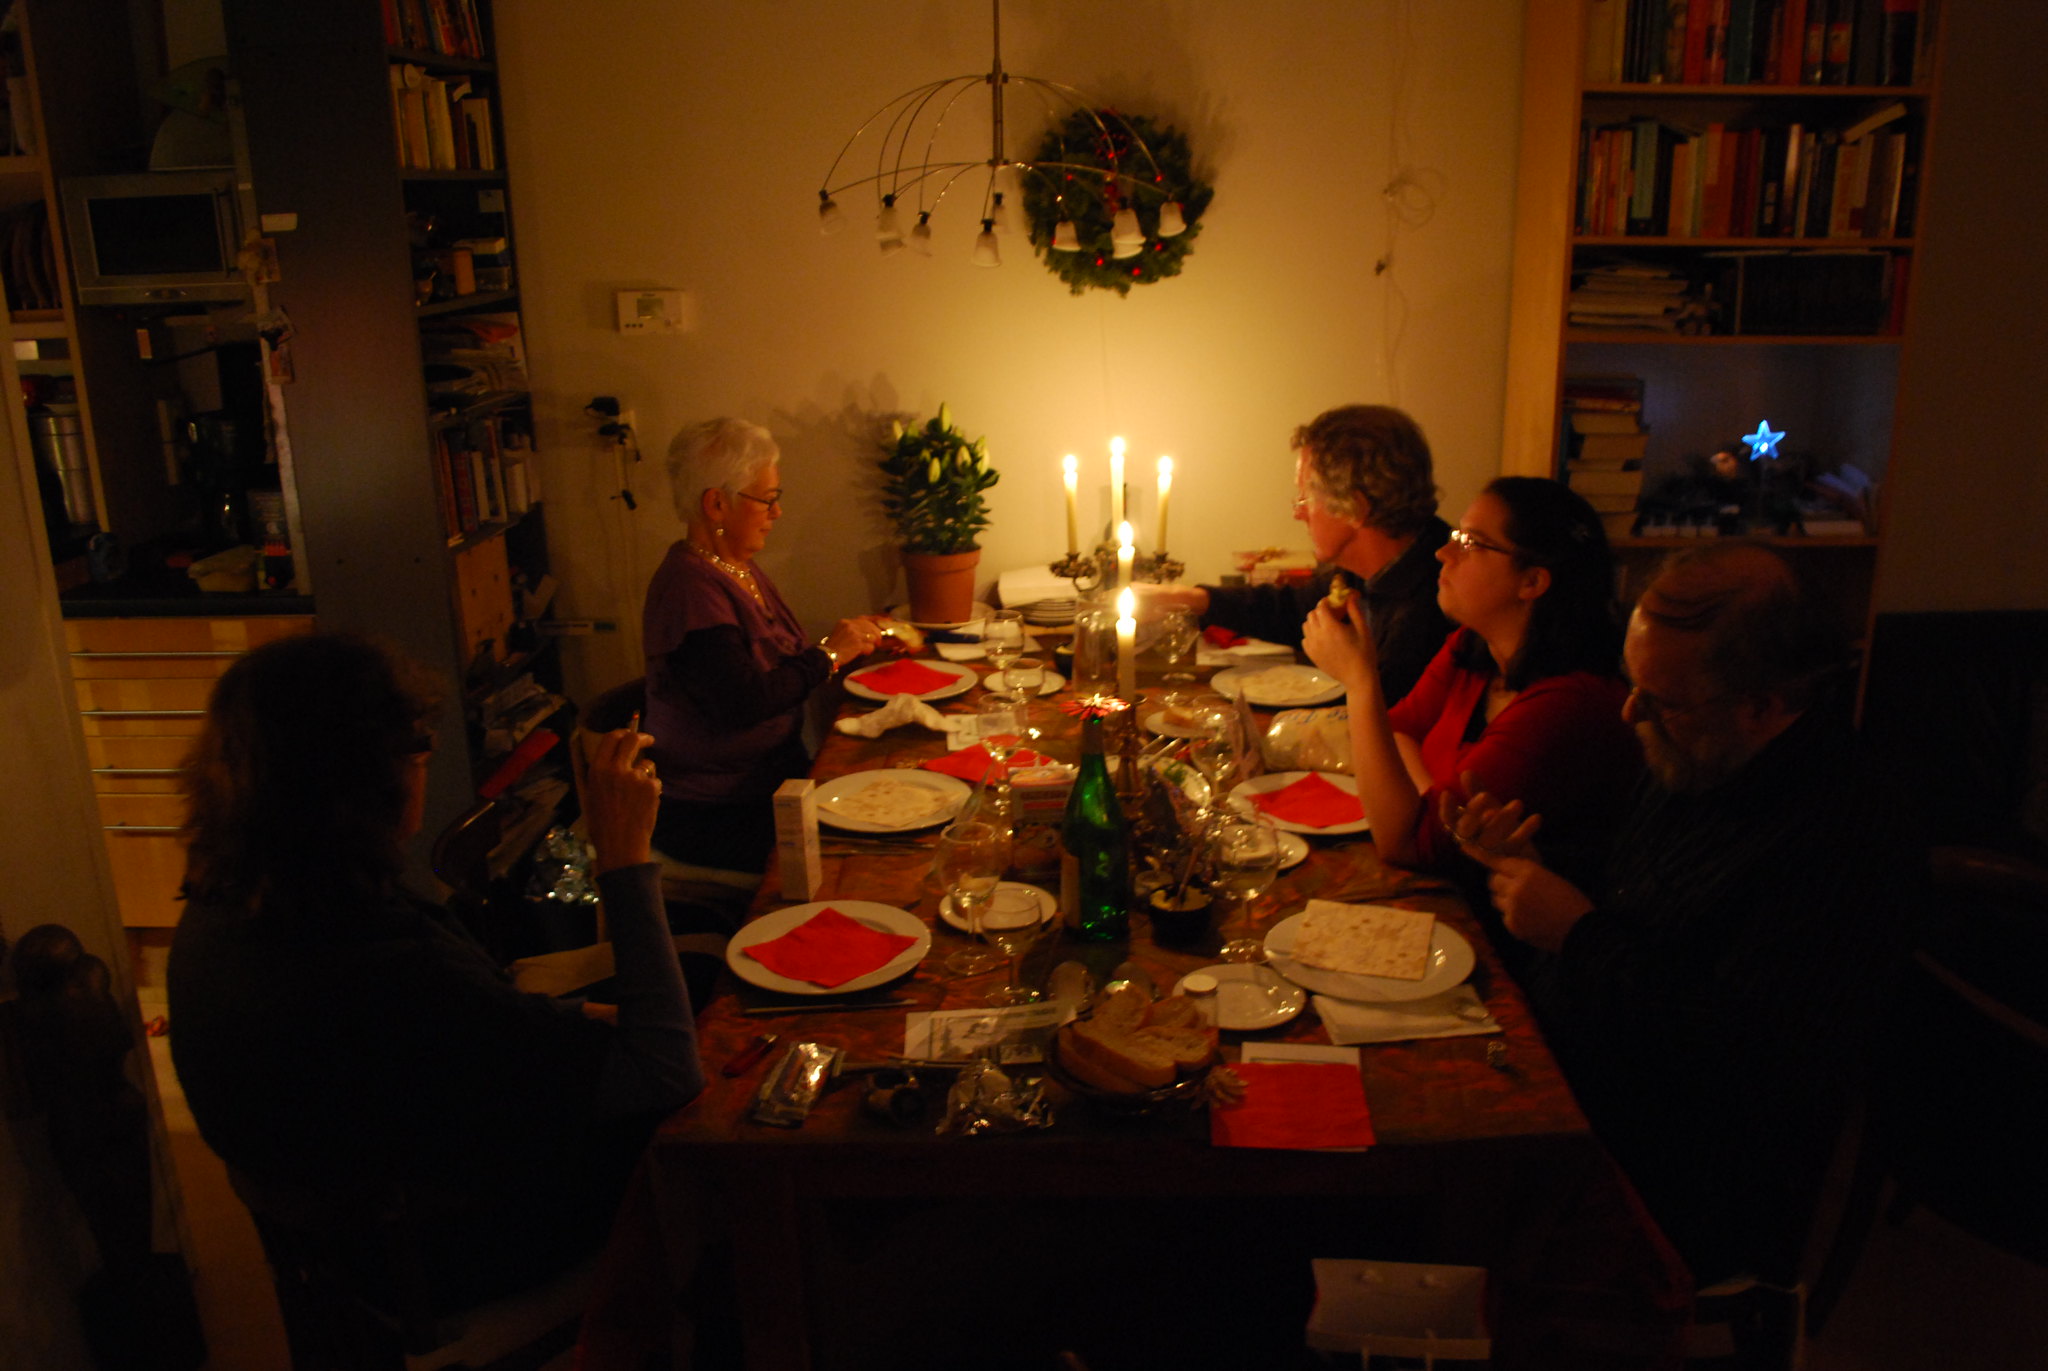 Les membres d'une famille en train de dîner de Noël | Source : Flickr